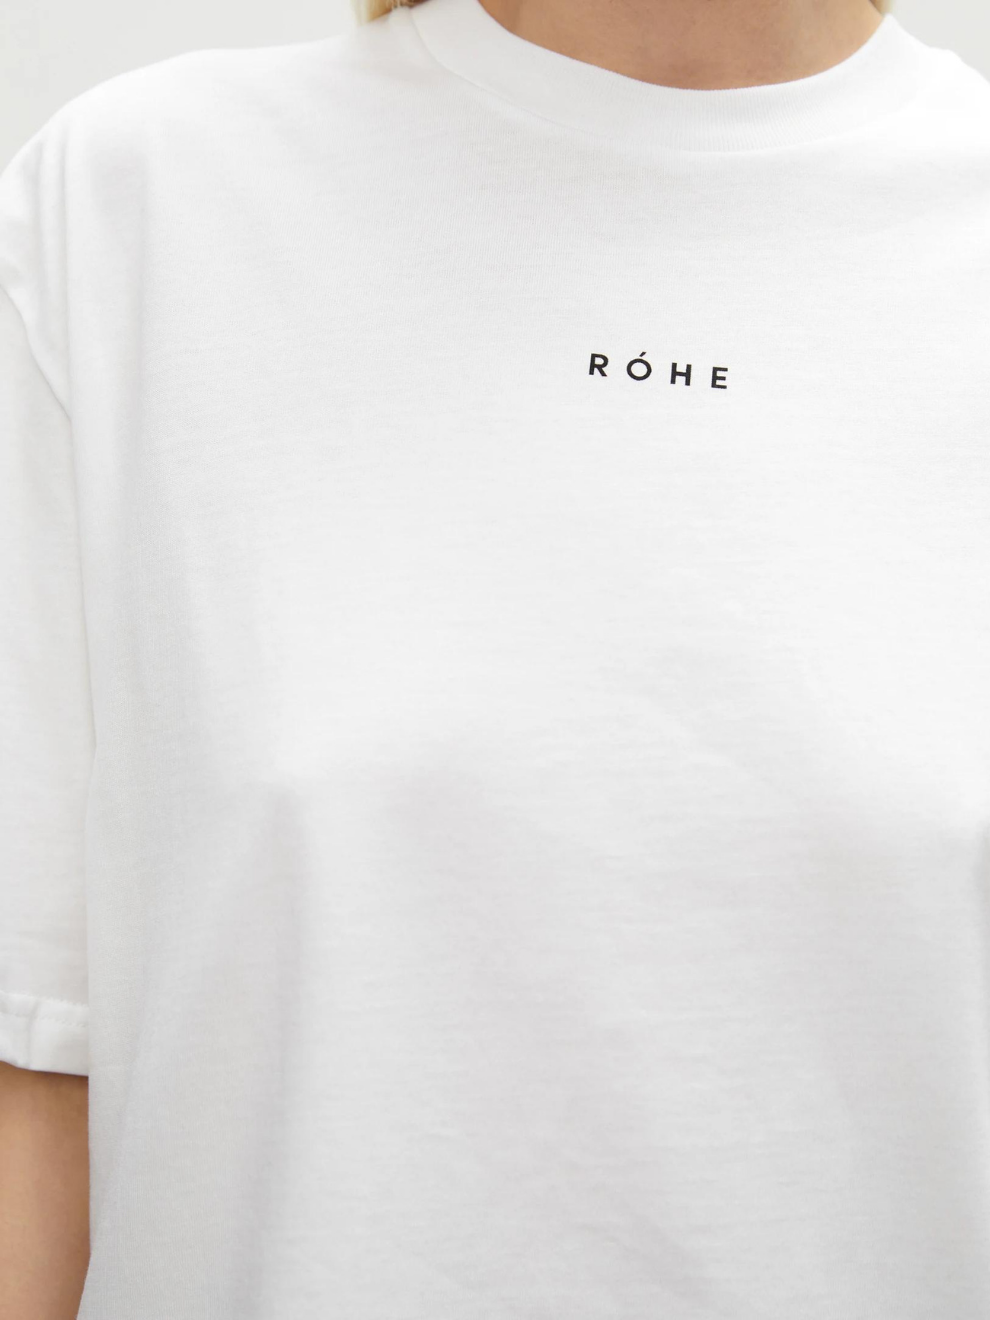 Toni T-Shirt in White